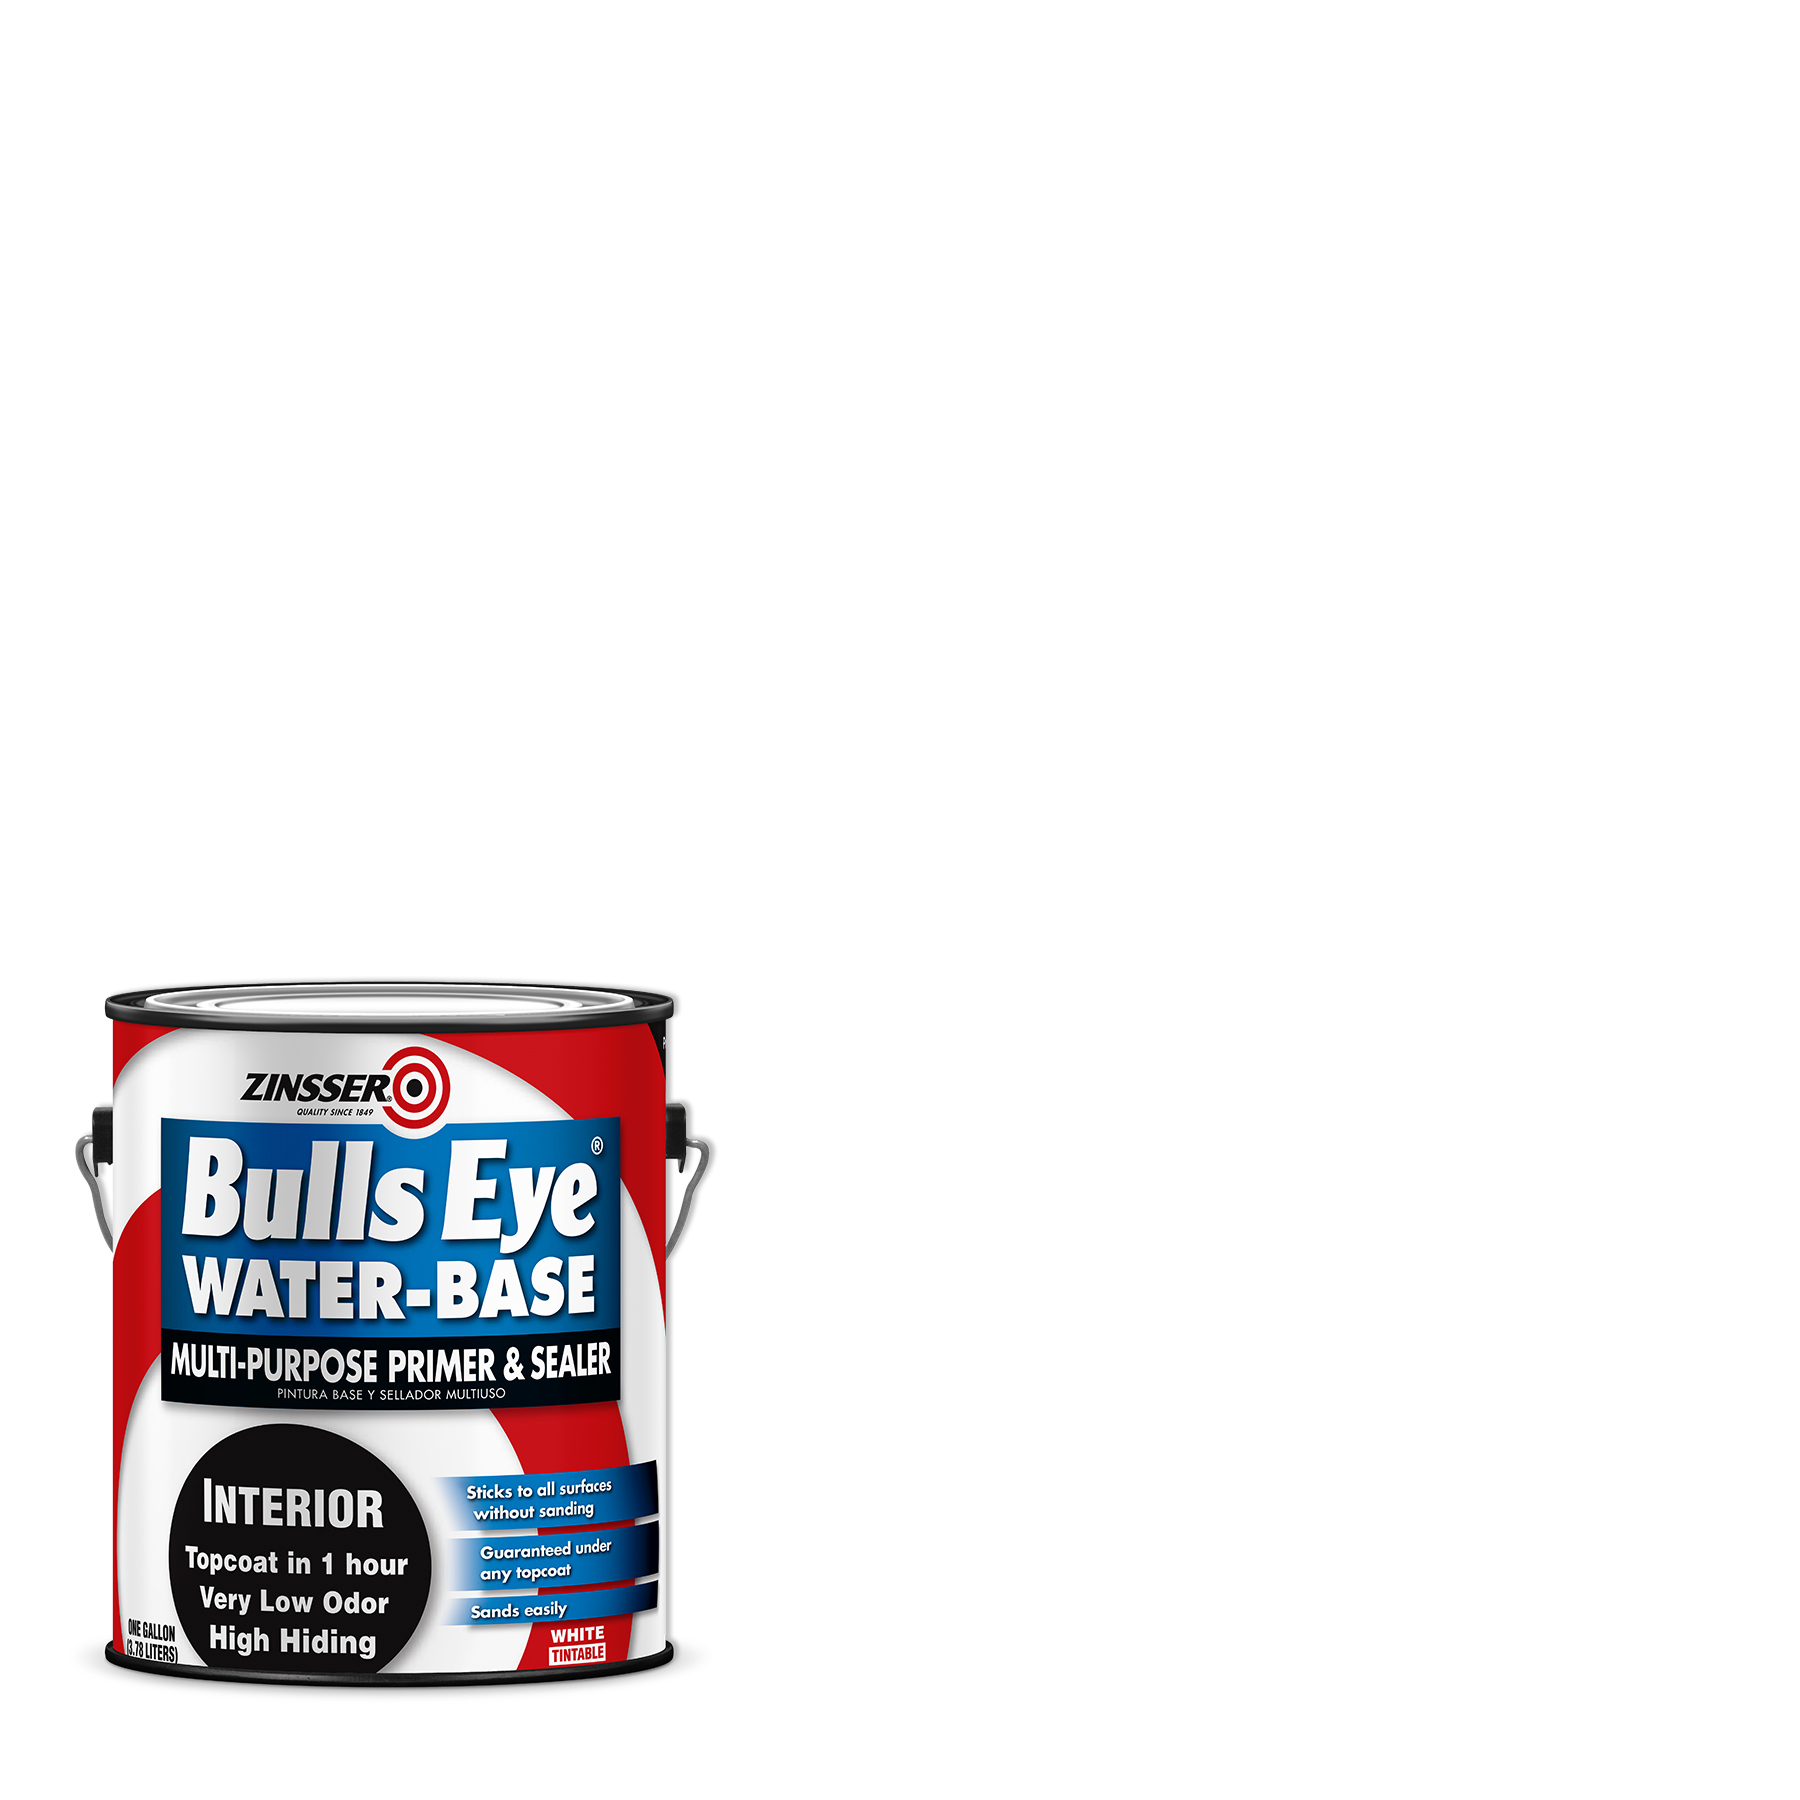 White, Zinsser Bulls Eye Water-Base Primer-2241, Gallon - image 1 of 8